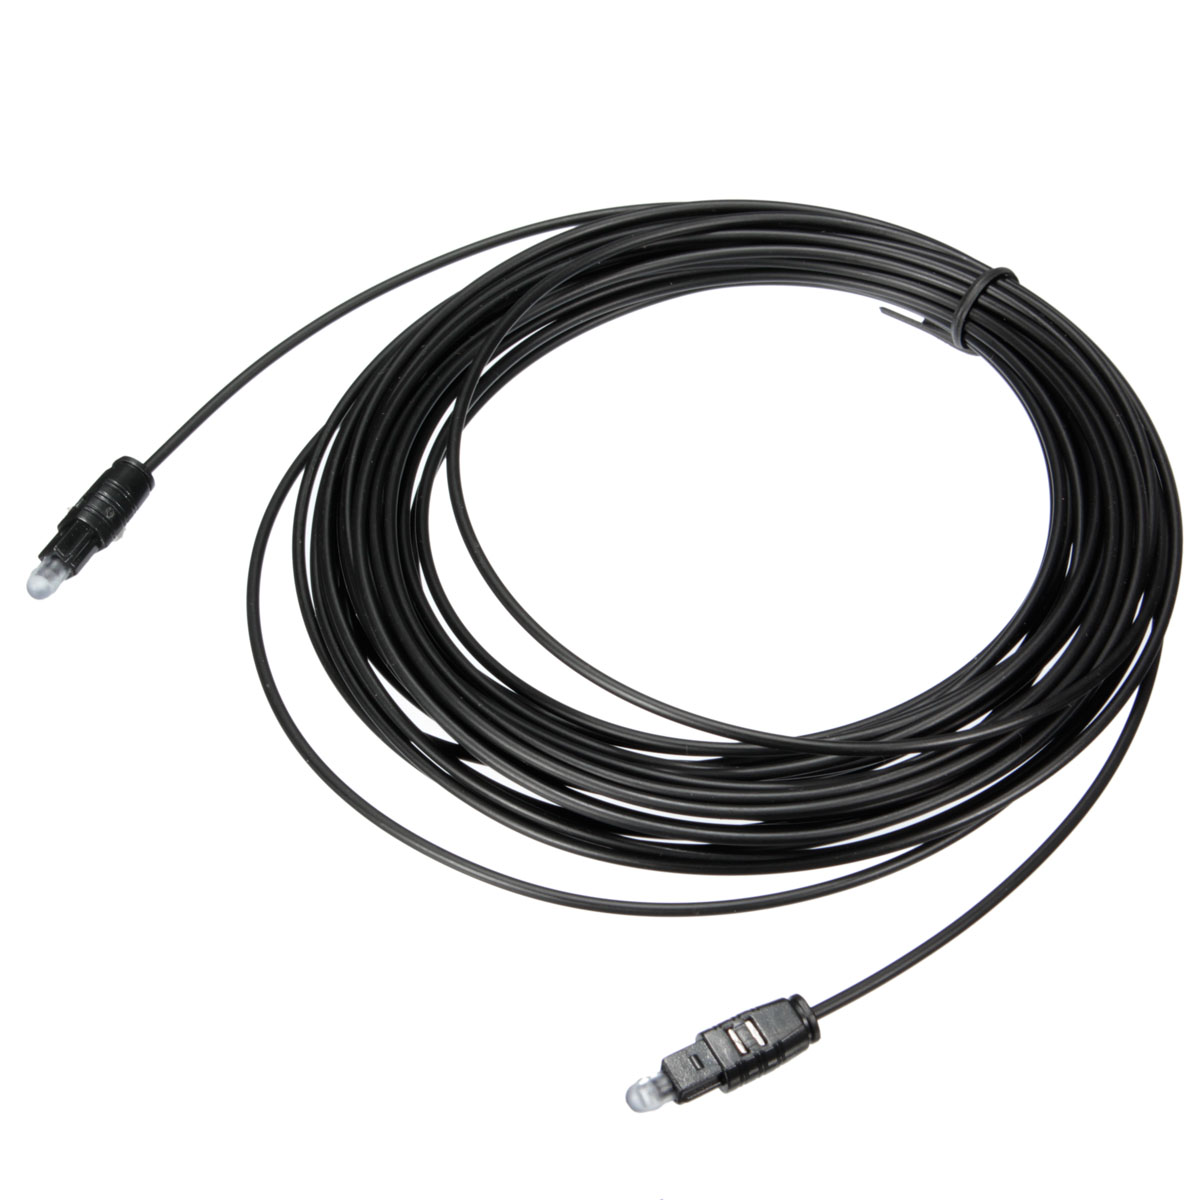 Connectique TV/Hifi/Video Câble Optique Toslink SP/DIF 1.5m